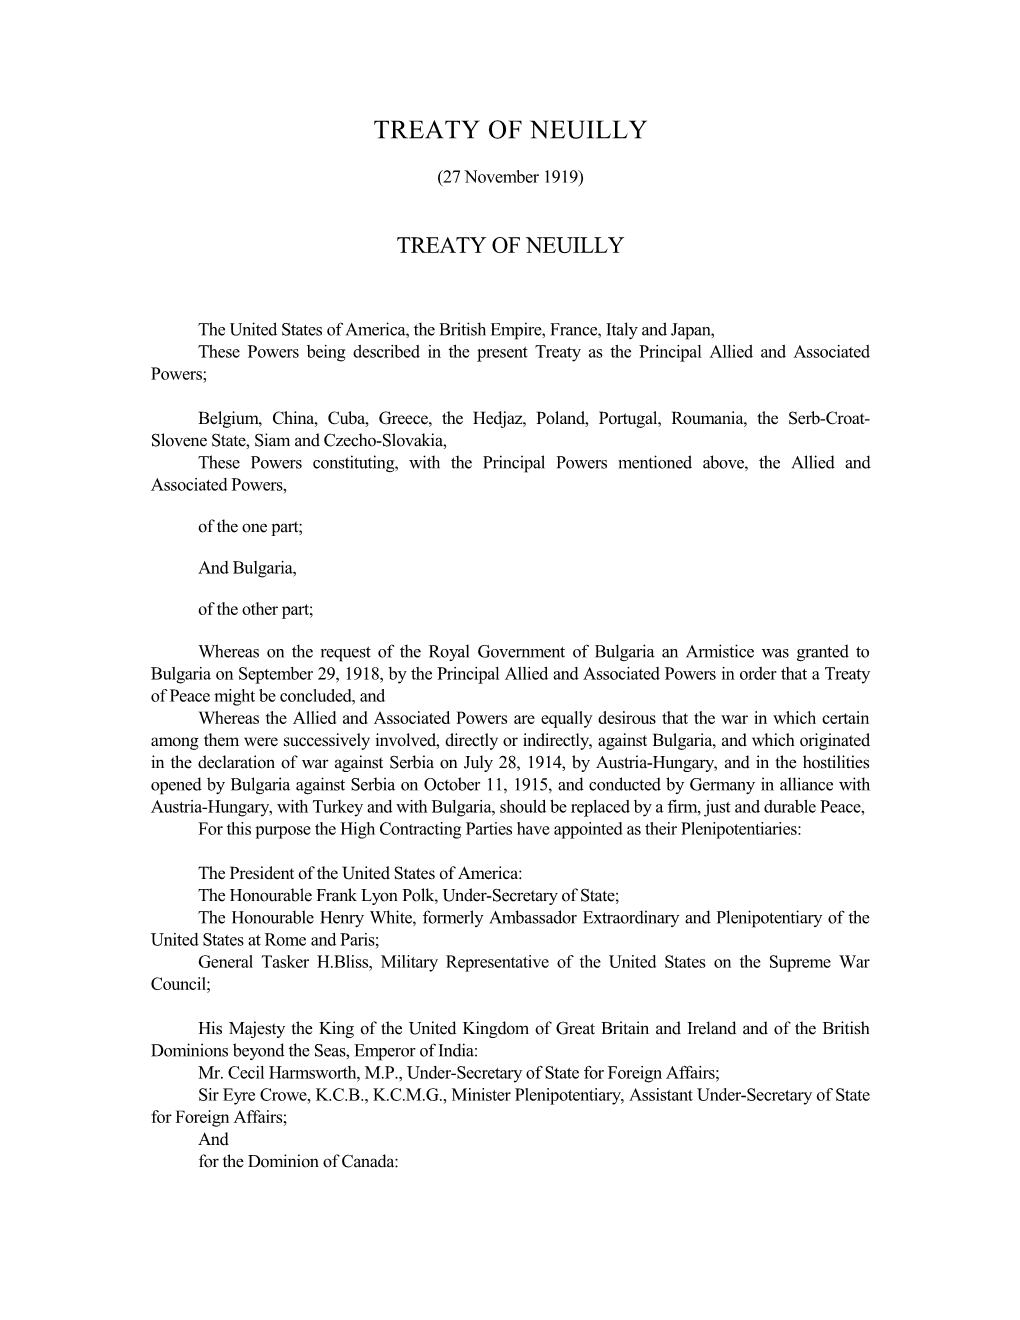 Treaty of Neuilly